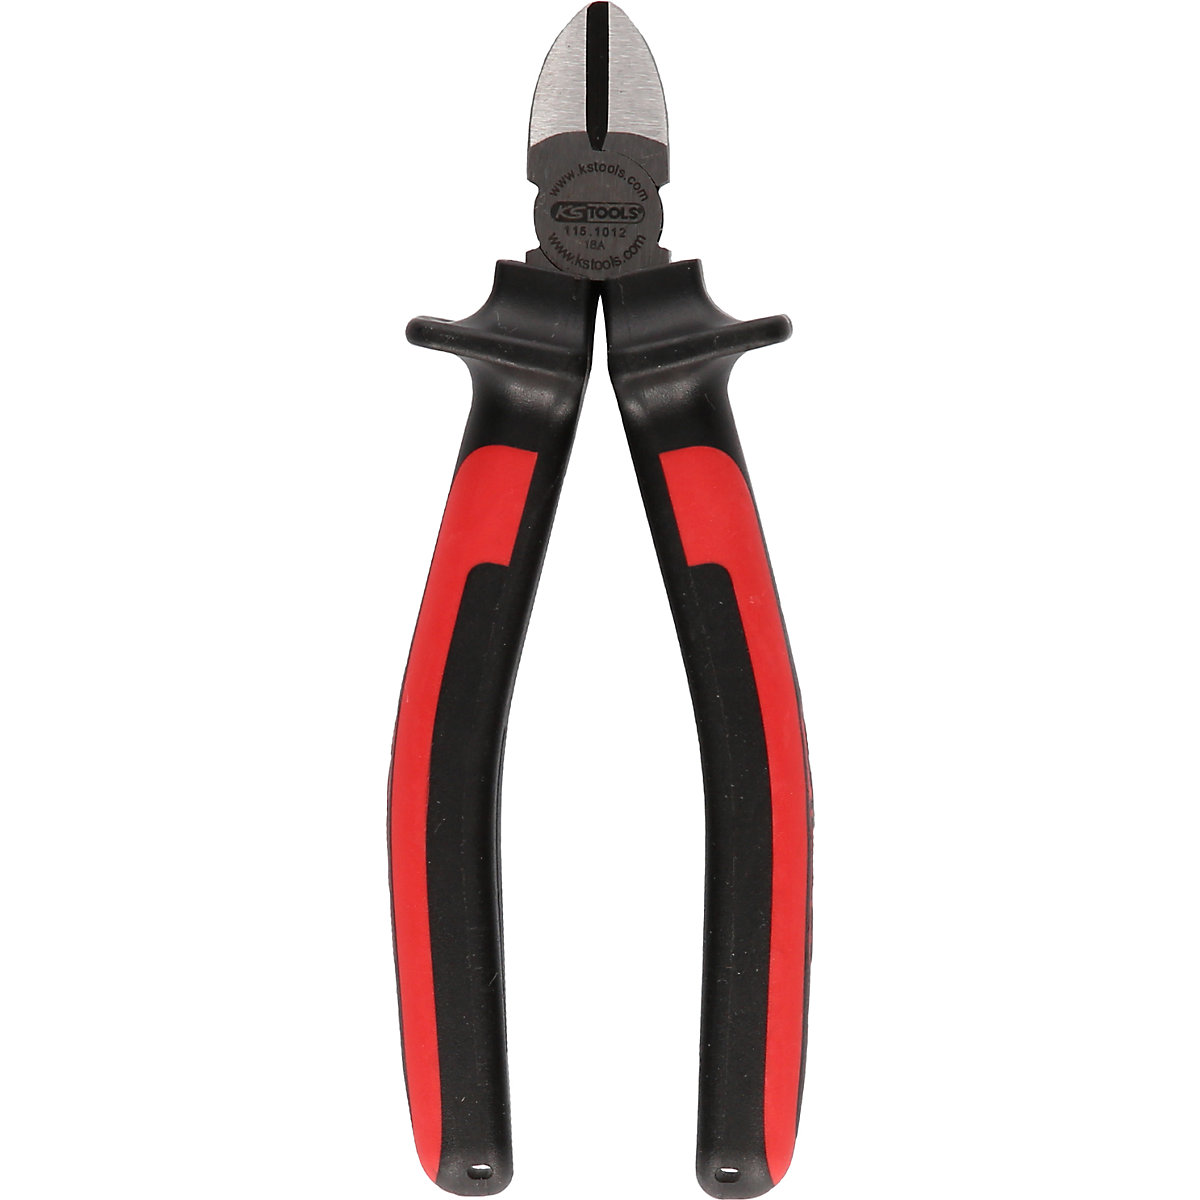 ERGOTORQUE diagonal side cutter – KS Tools